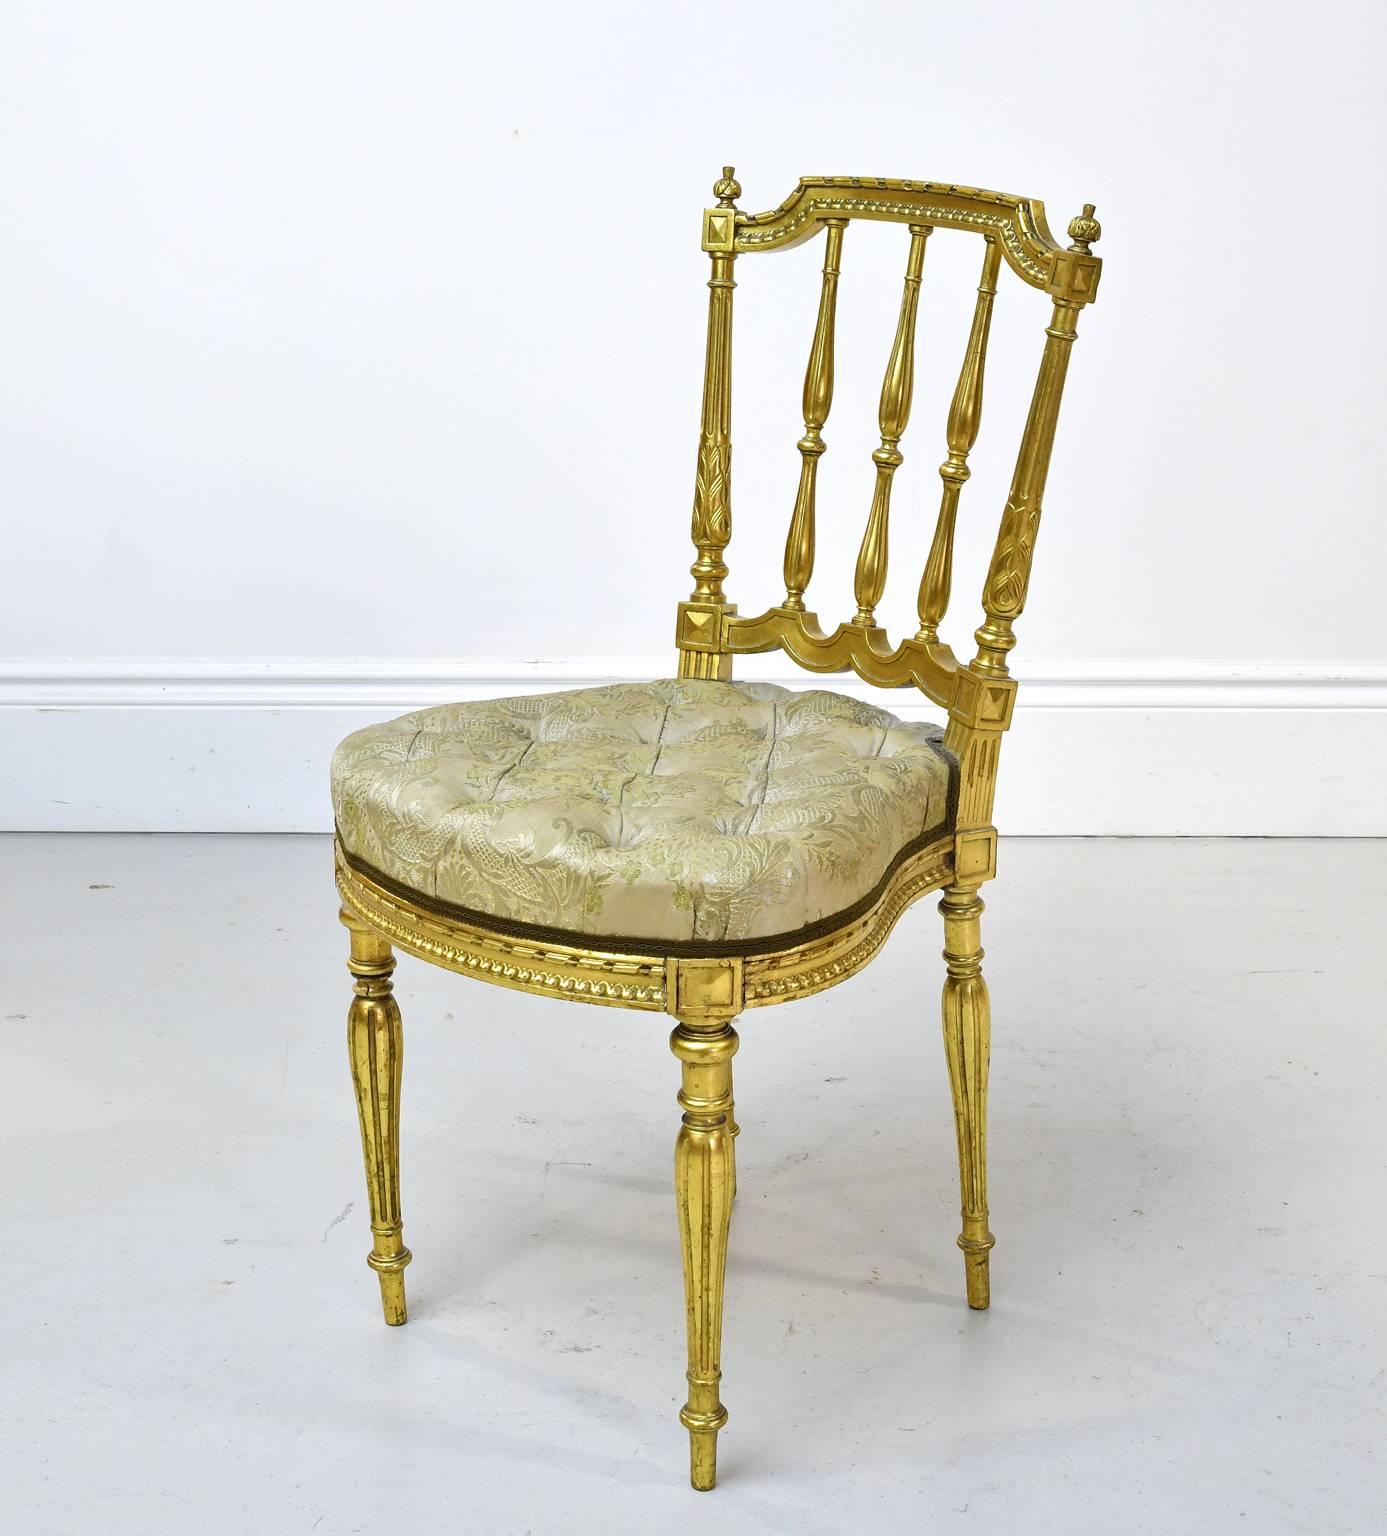 Charmante chaise de salon de style Louis XVI en bois doré (feuilles d'or appliquées sur le bois) avec dossier en fuseau, pieds tournés et cannelés, assise sculptée et de forme arrondie avec tapisserie touffetée. France de la Belle Époque, vers